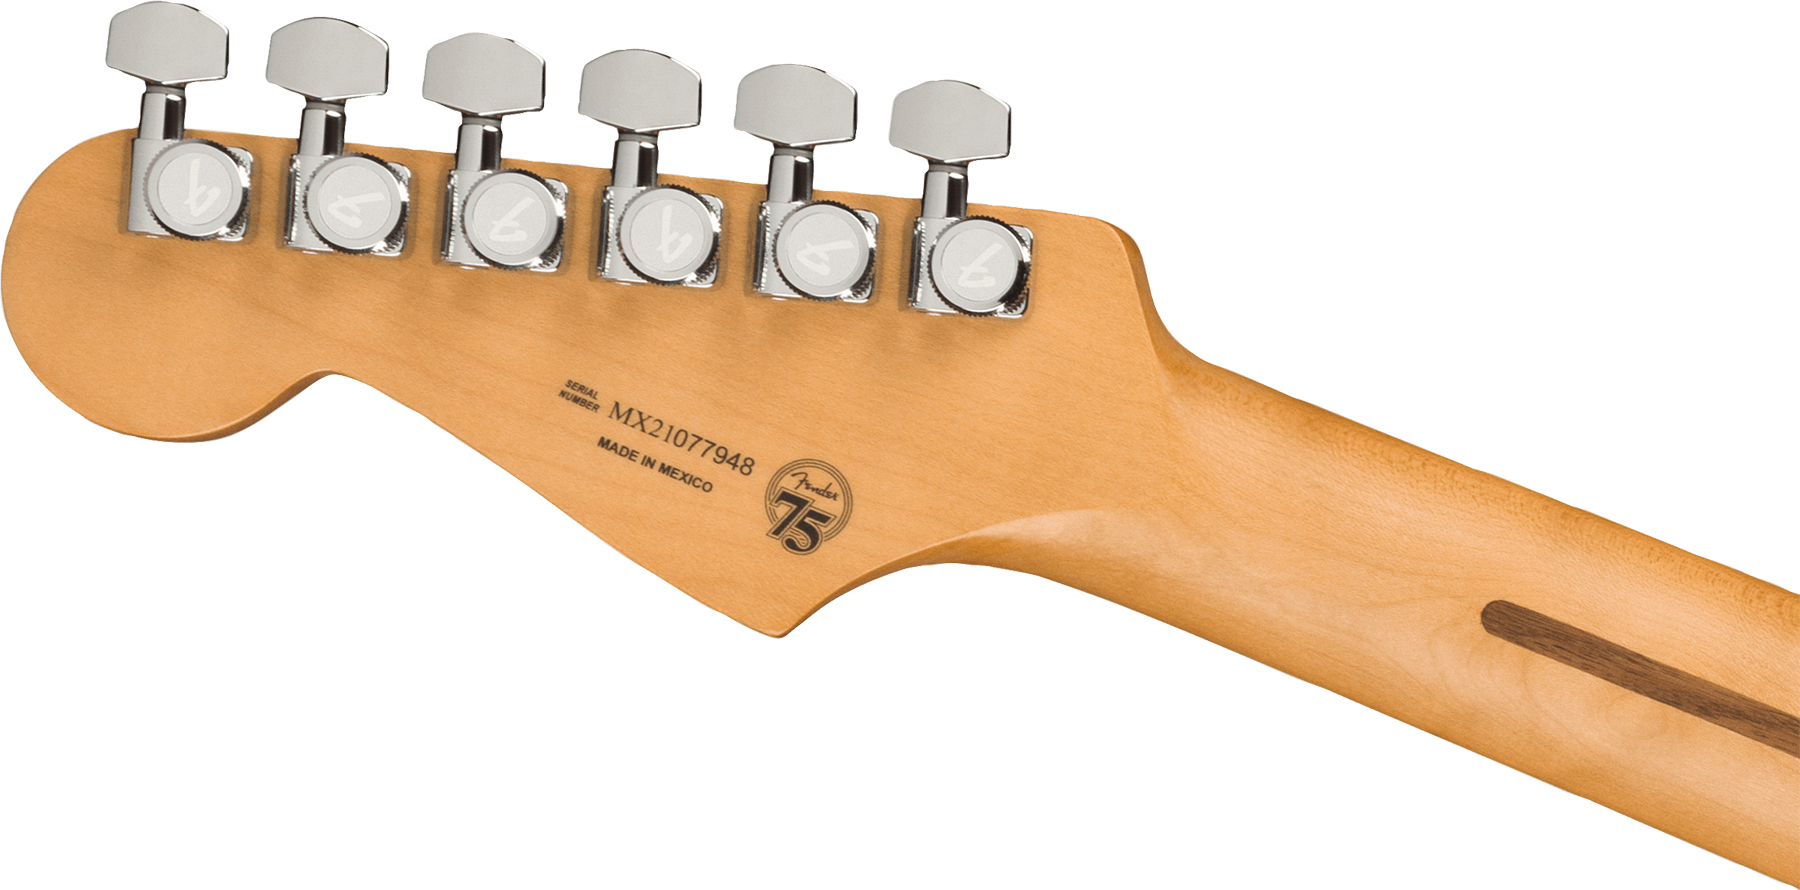 Fender Strat Player Plus Lh Mex Gaucher 3s Trem Mn - Olympic Pearl - E-Gitarre für Linkshänder - Variation 3